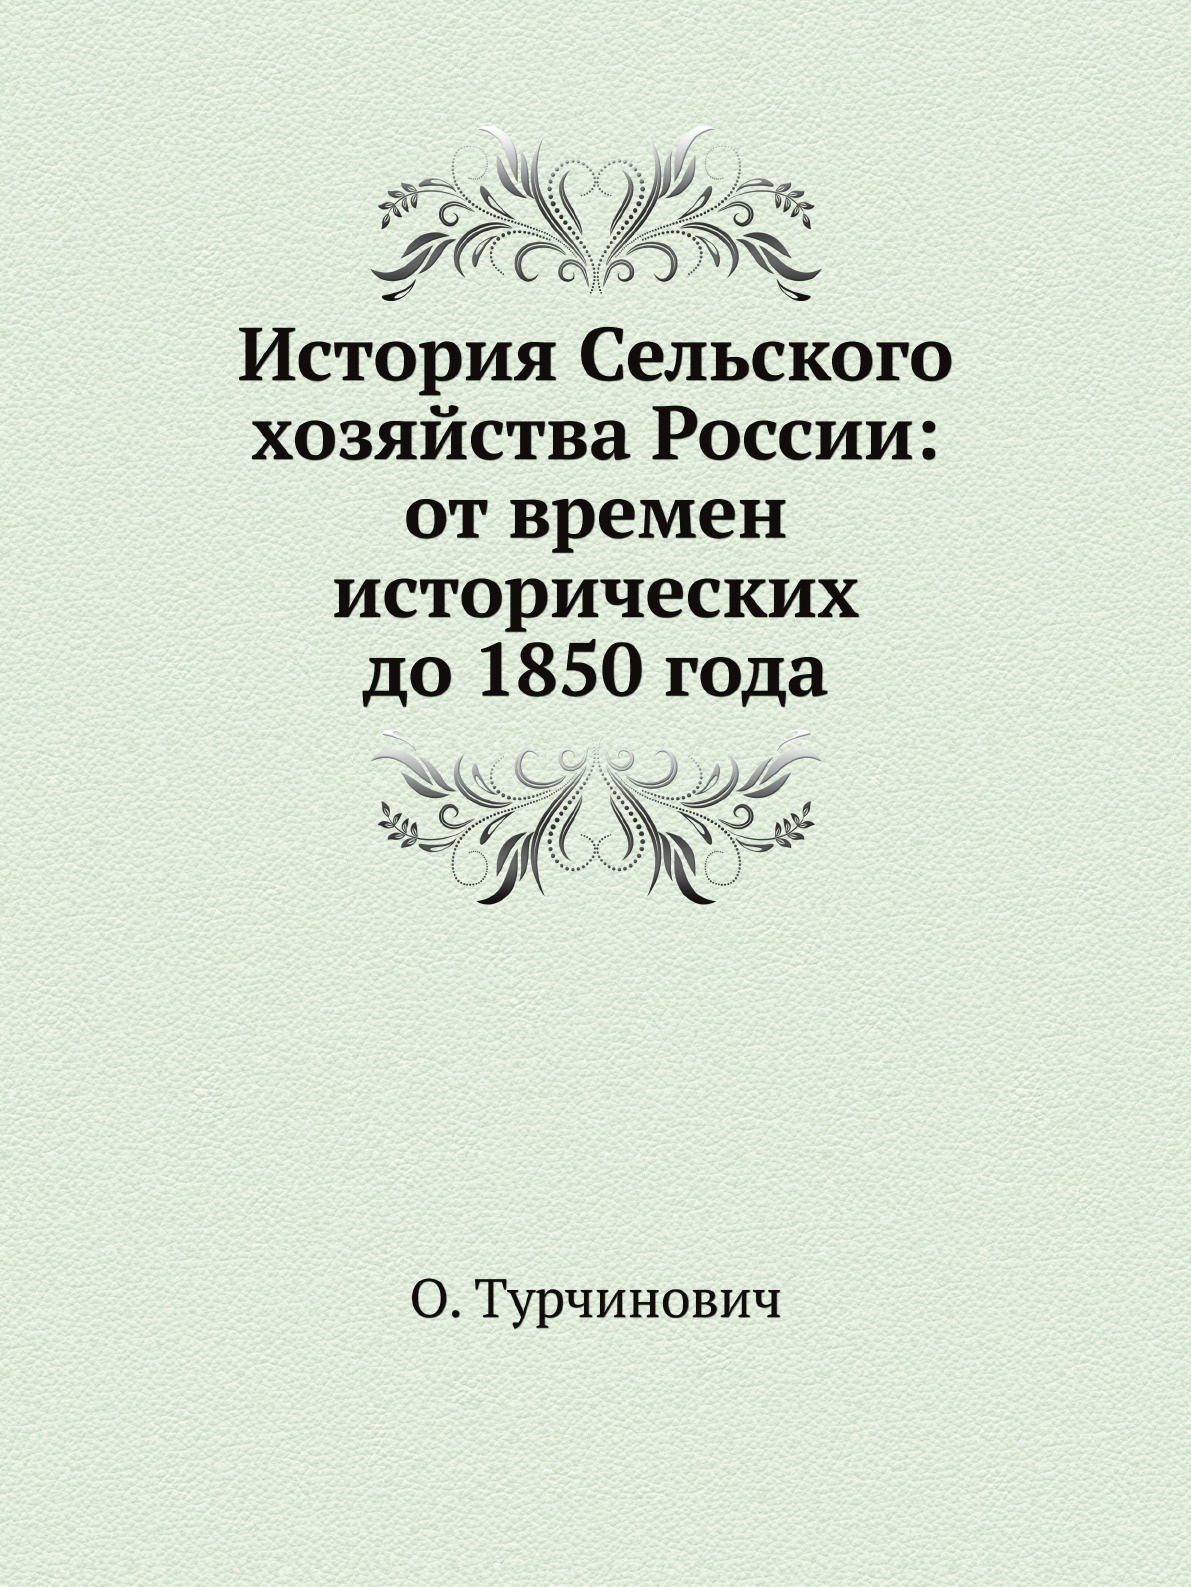 История Сельского хозяйства России: от времен исторических до 1850 года